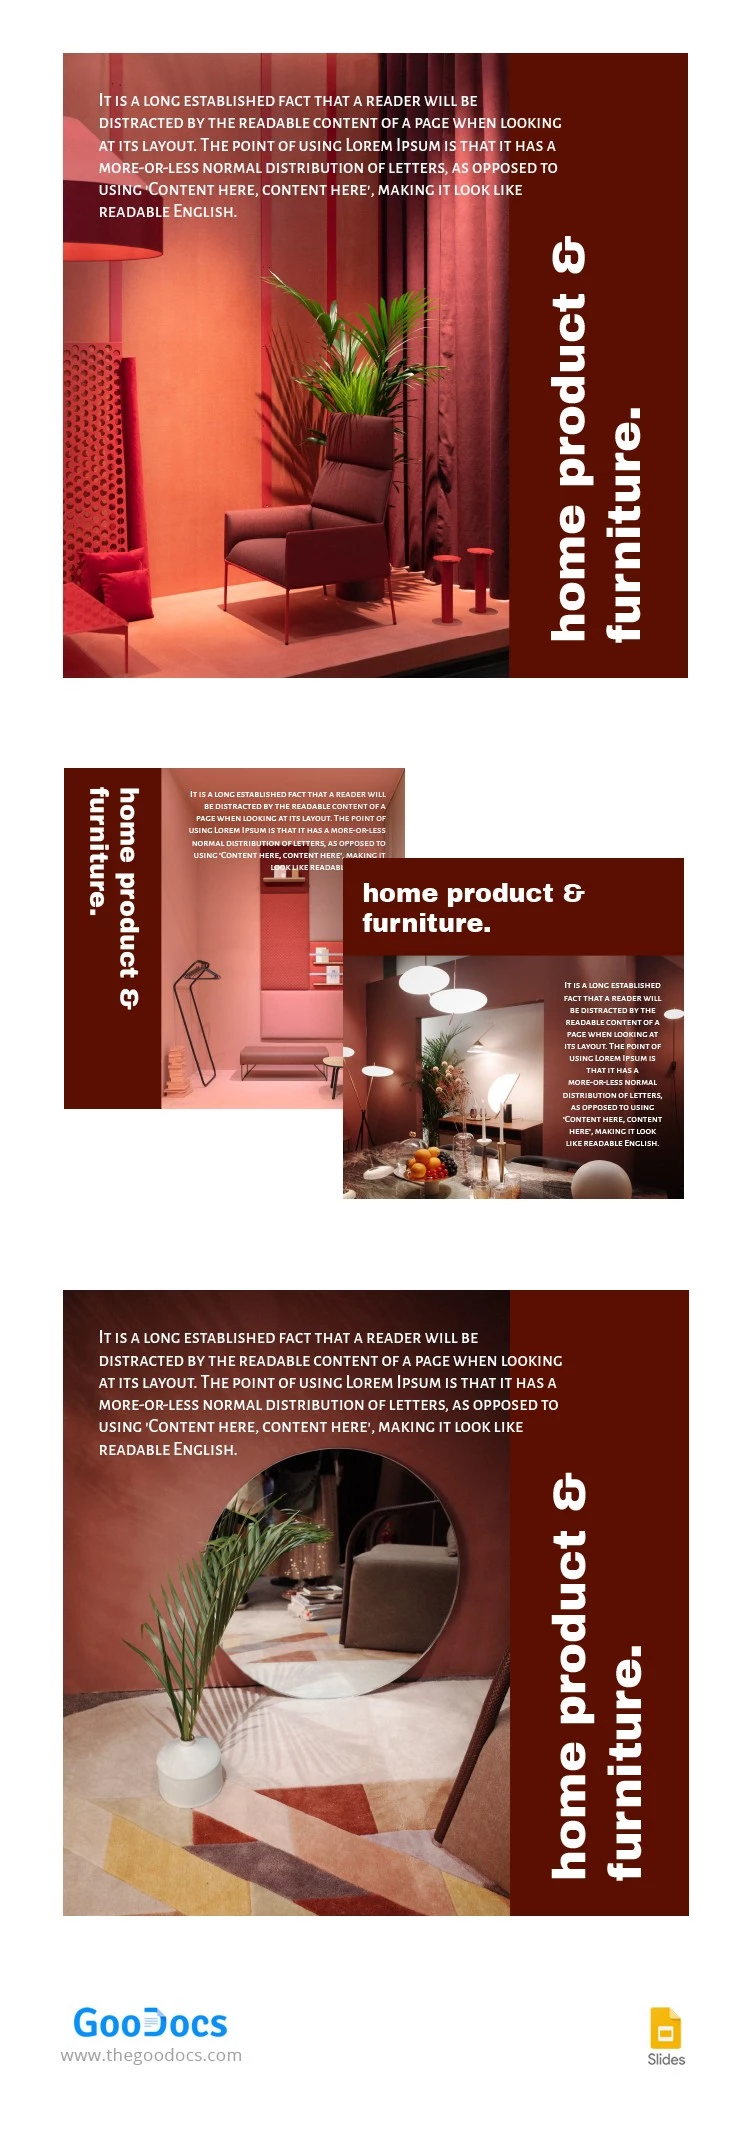 Mobilier de maison rouge - Produit Amazon - free Google Docs Template - 10064277